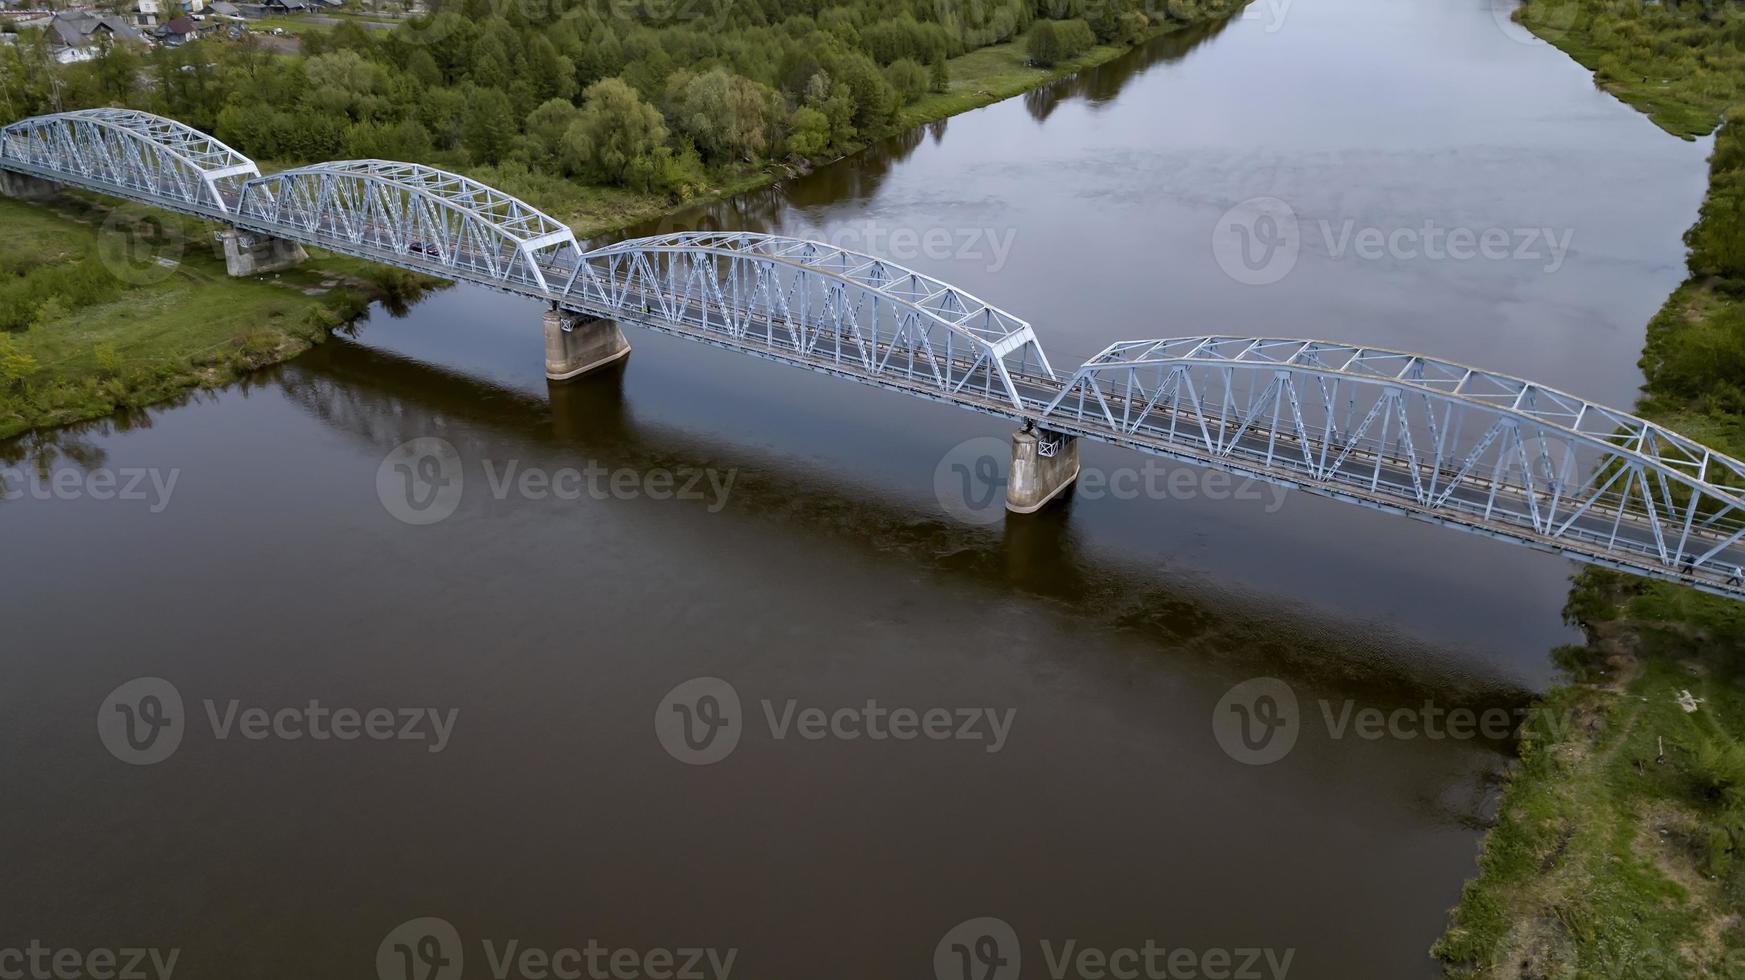 järnbro över floden utsikt från drönaren foto